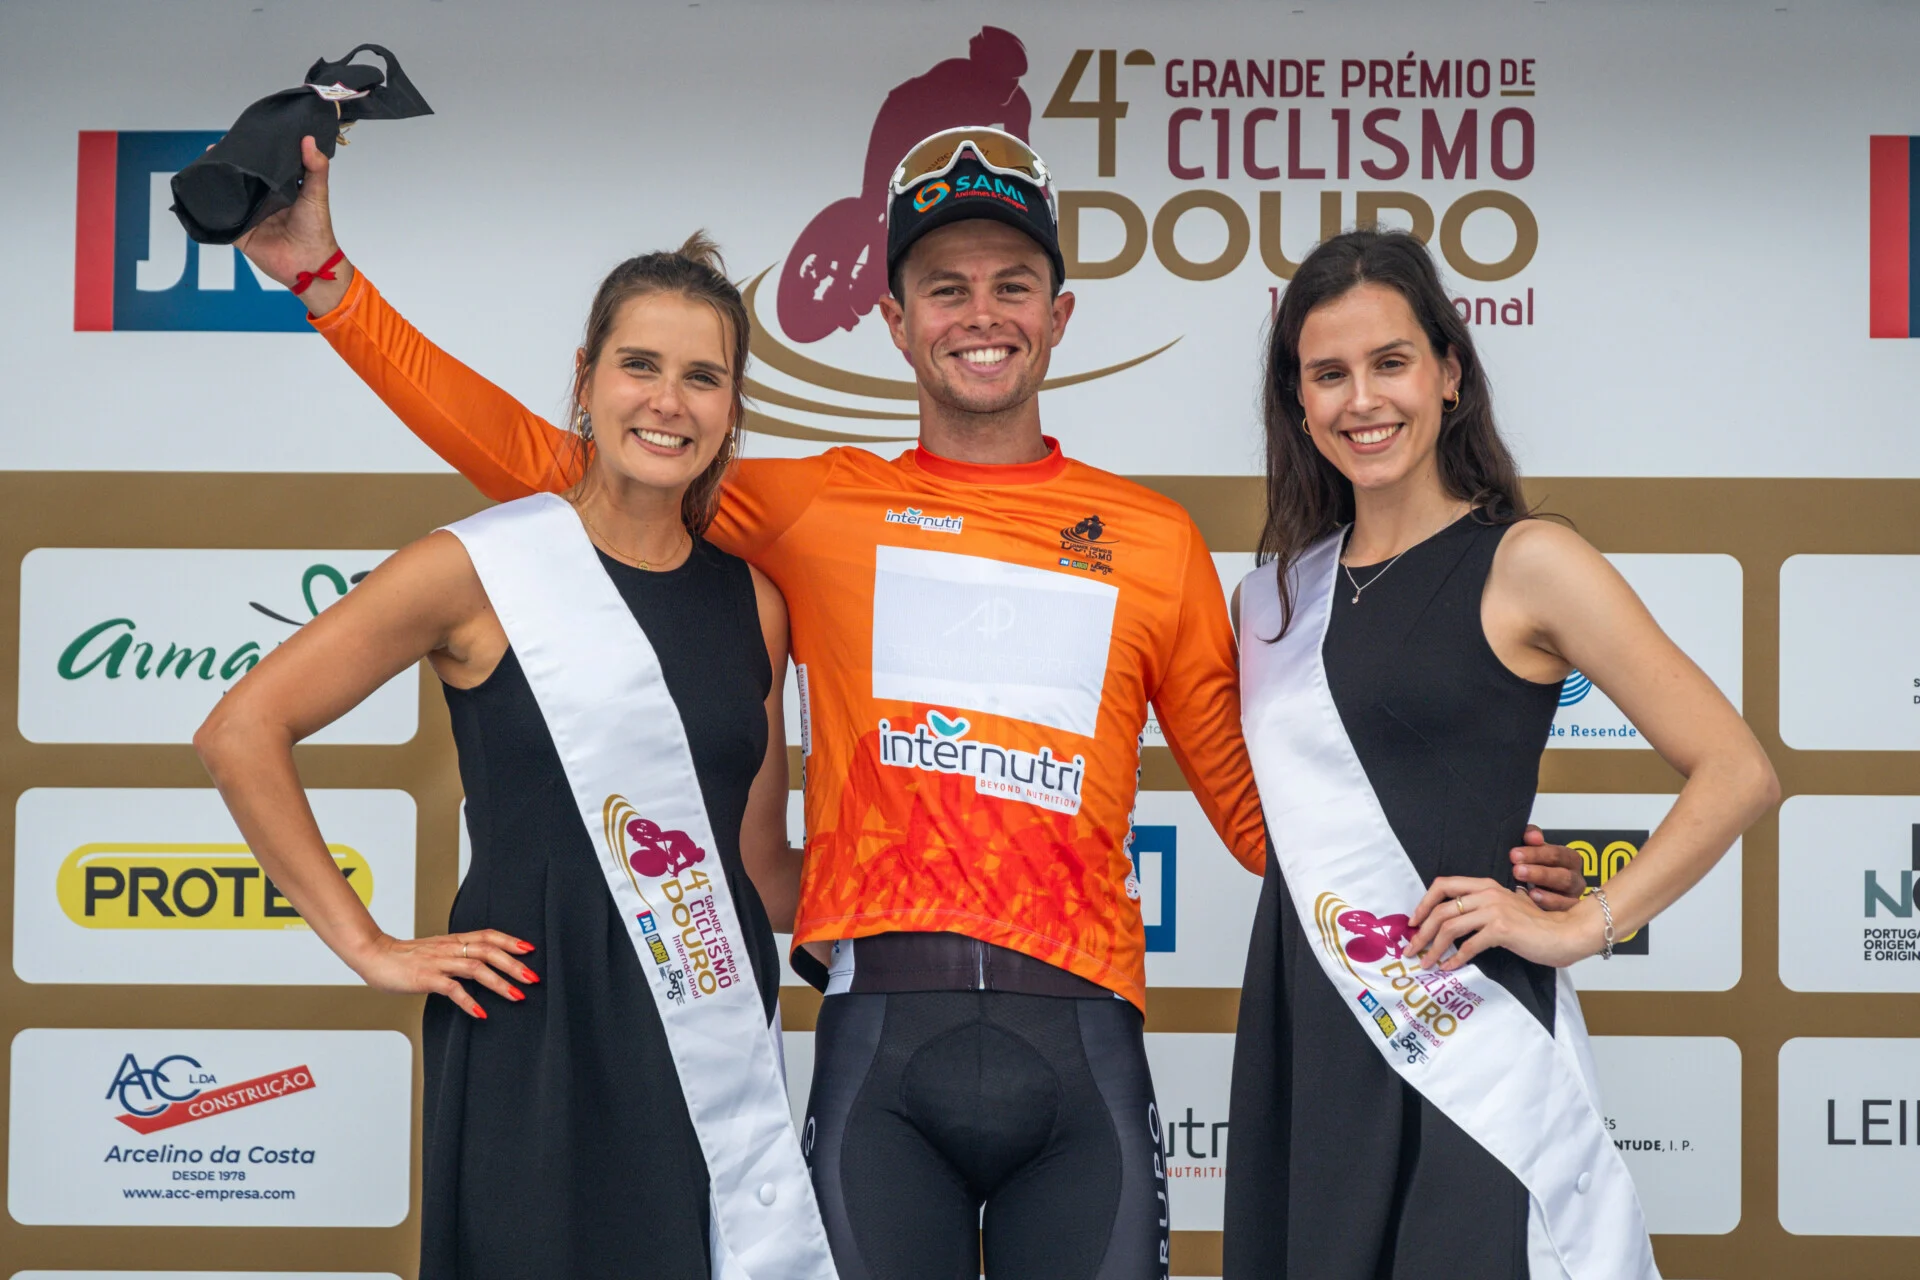 Clube Ciclismo de Tavira - 4ª GP CICLISMO DOURO Internacional14